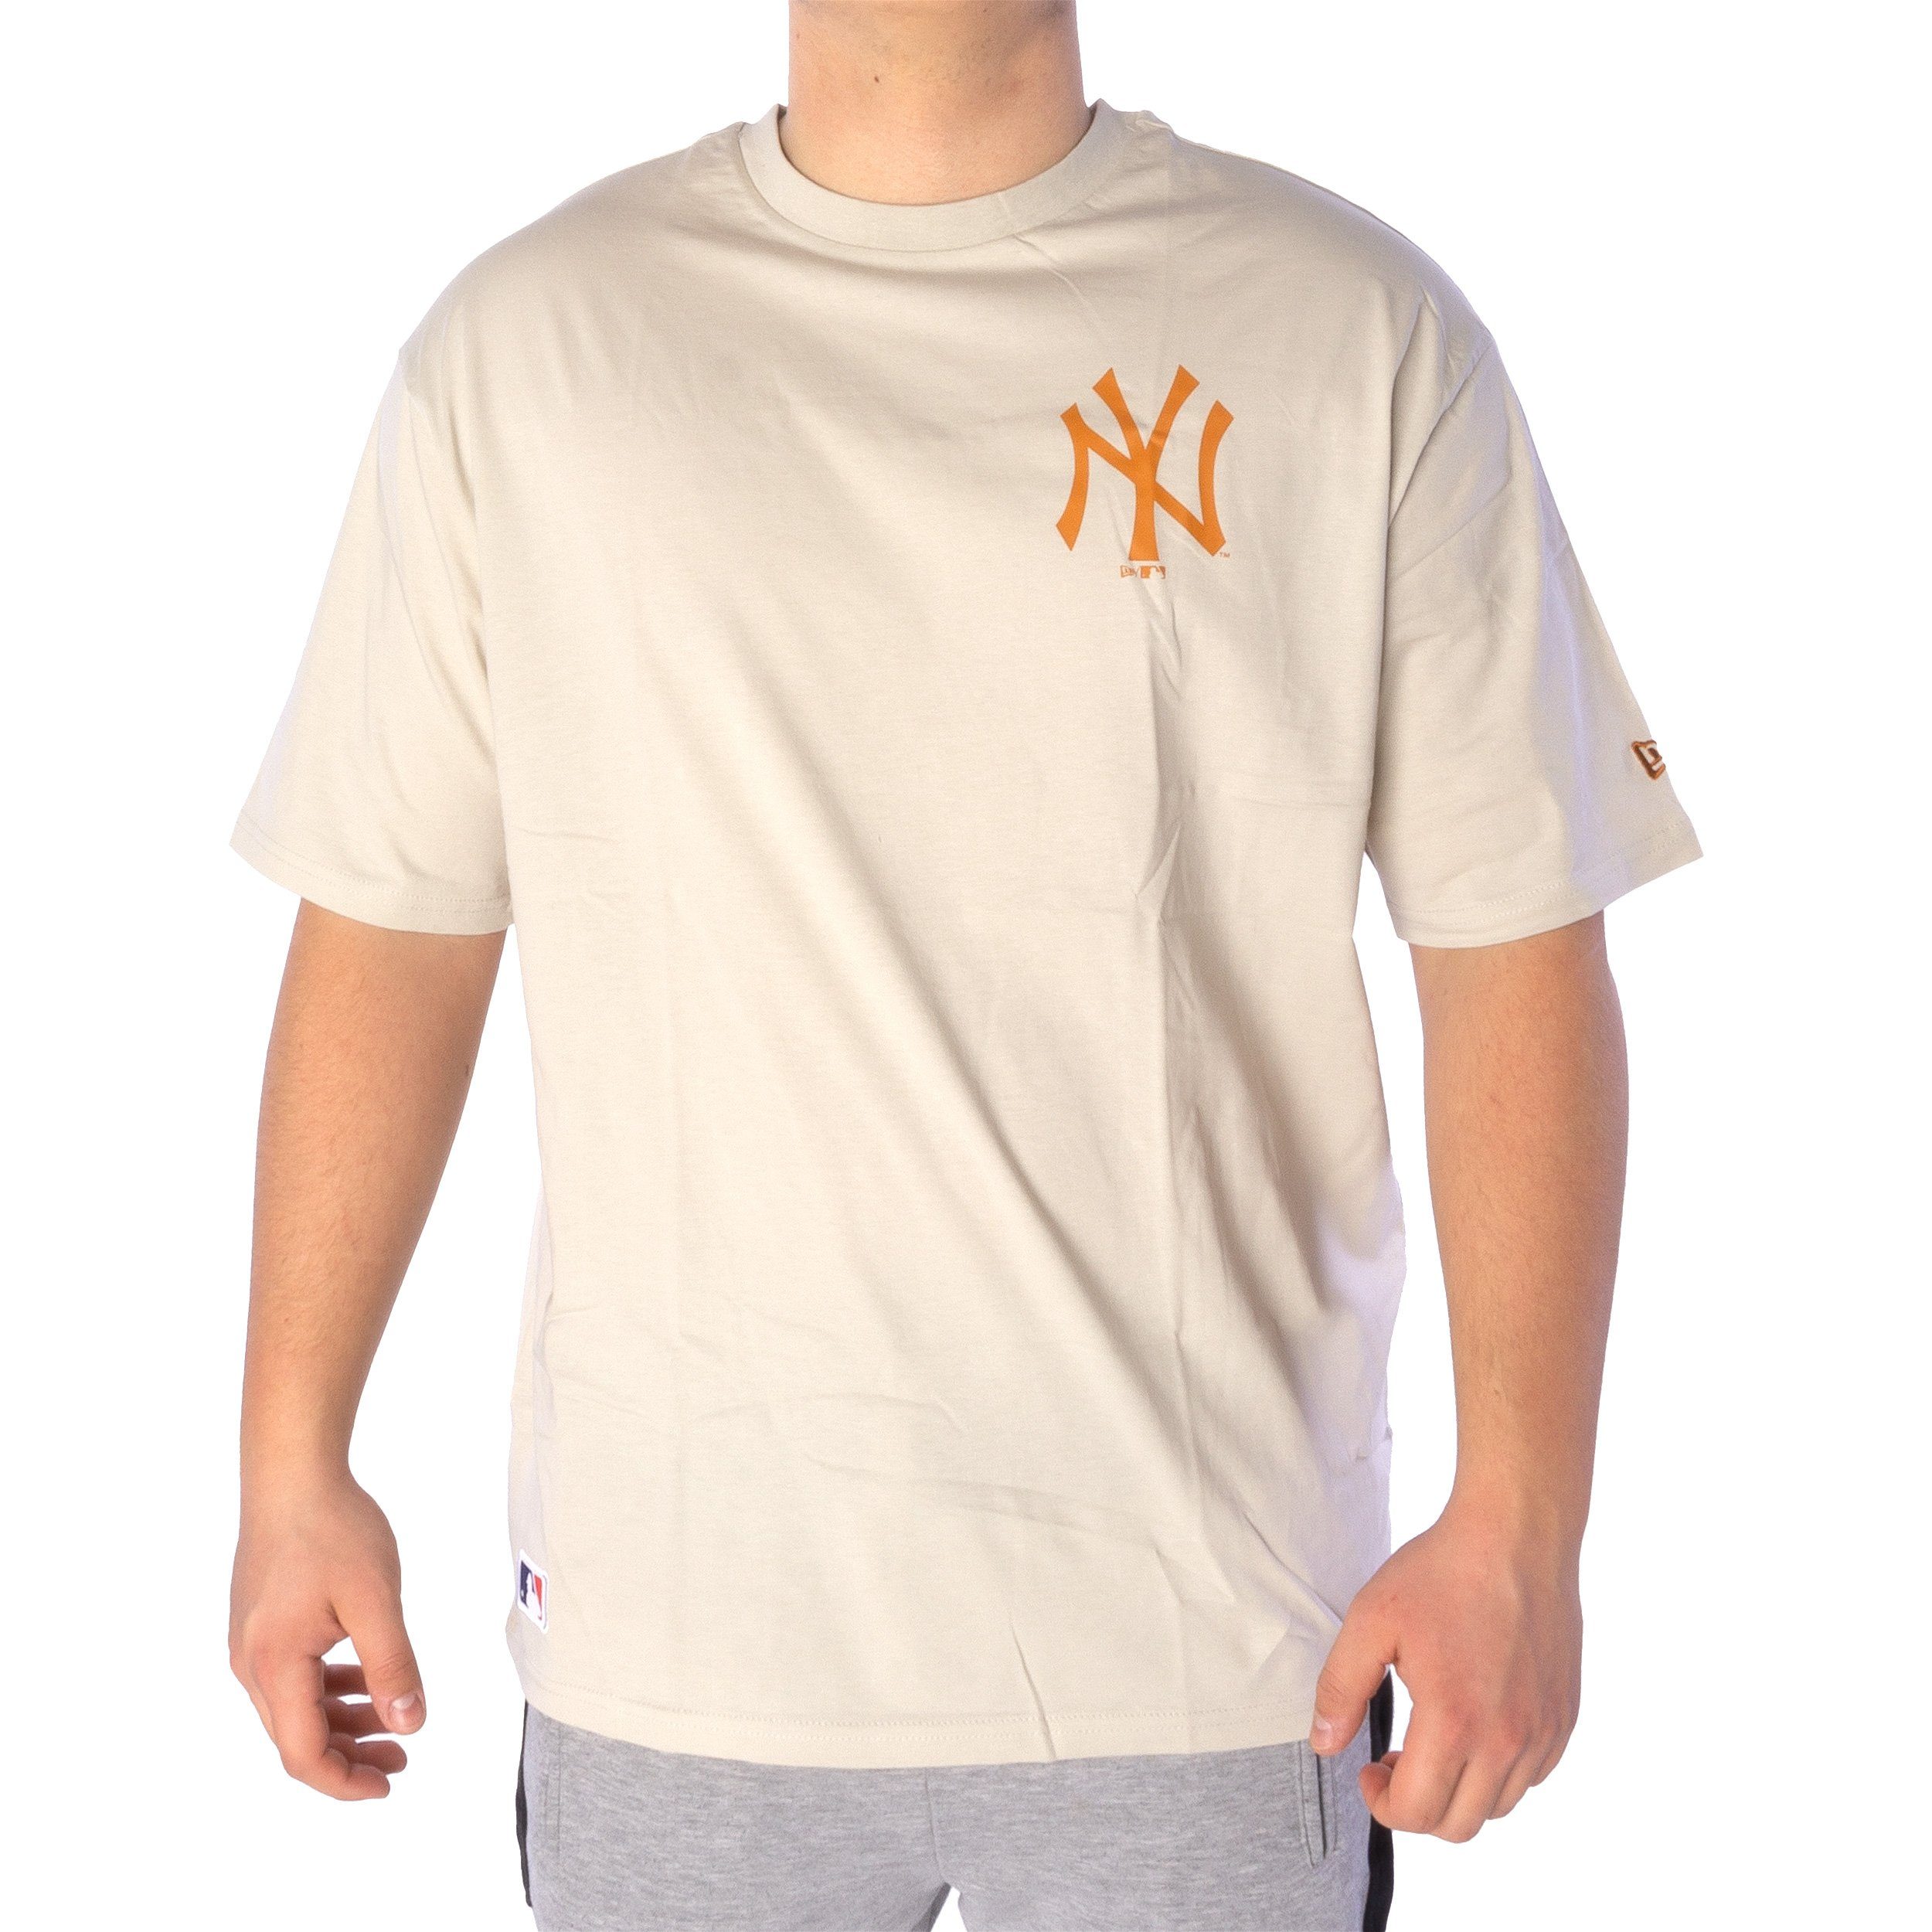 T-Shirt Neyyan MLB T-Shirt New New League Era Era